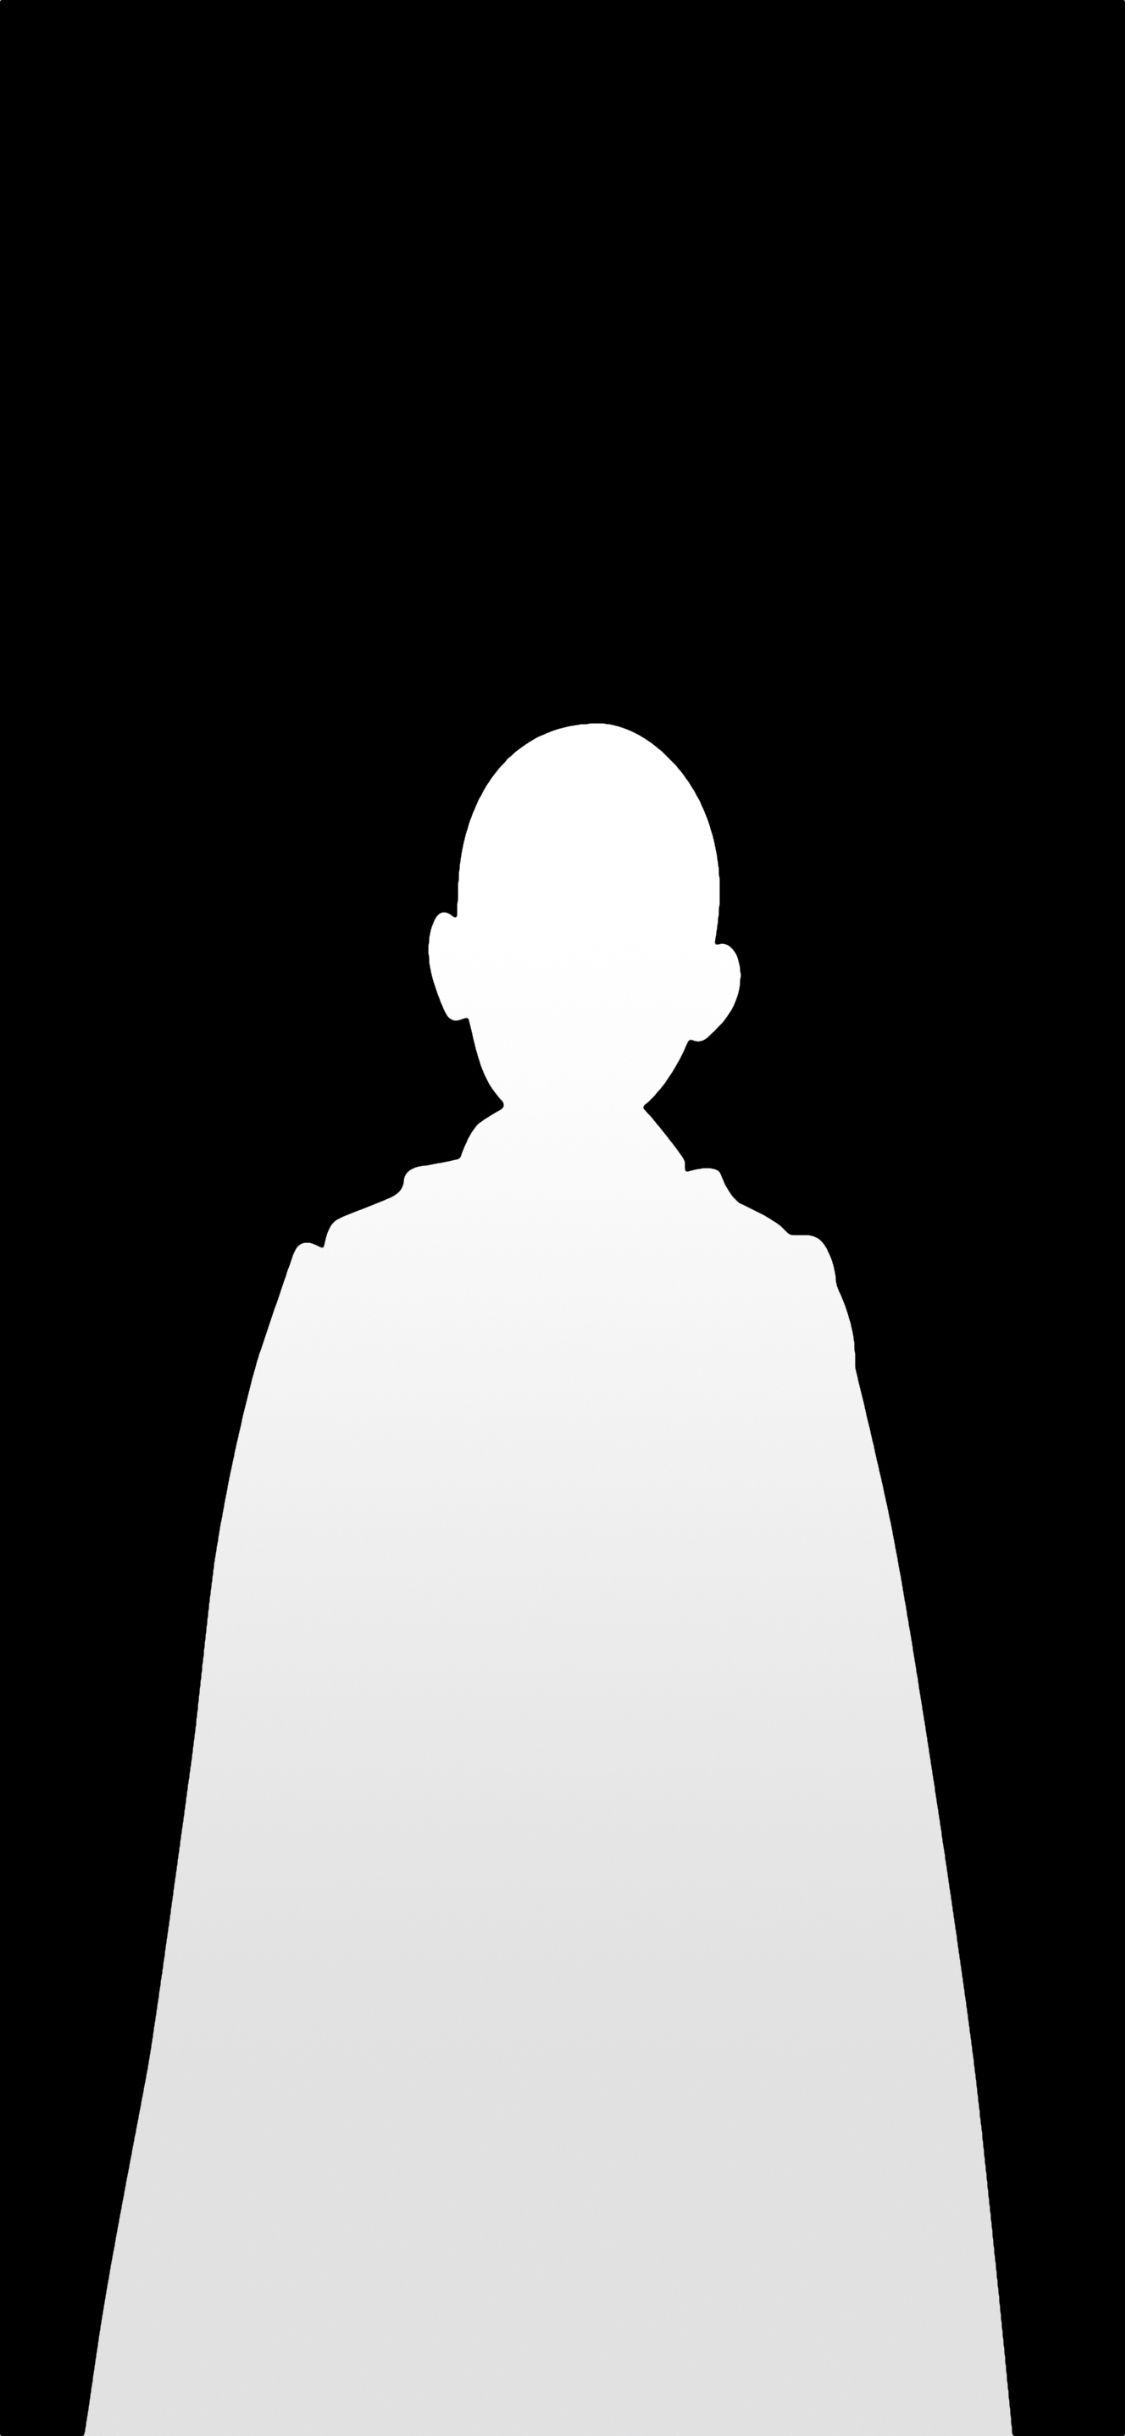 وکتور جالب از سایه سایتاما با تم سیاه سفید برای پروفایل 